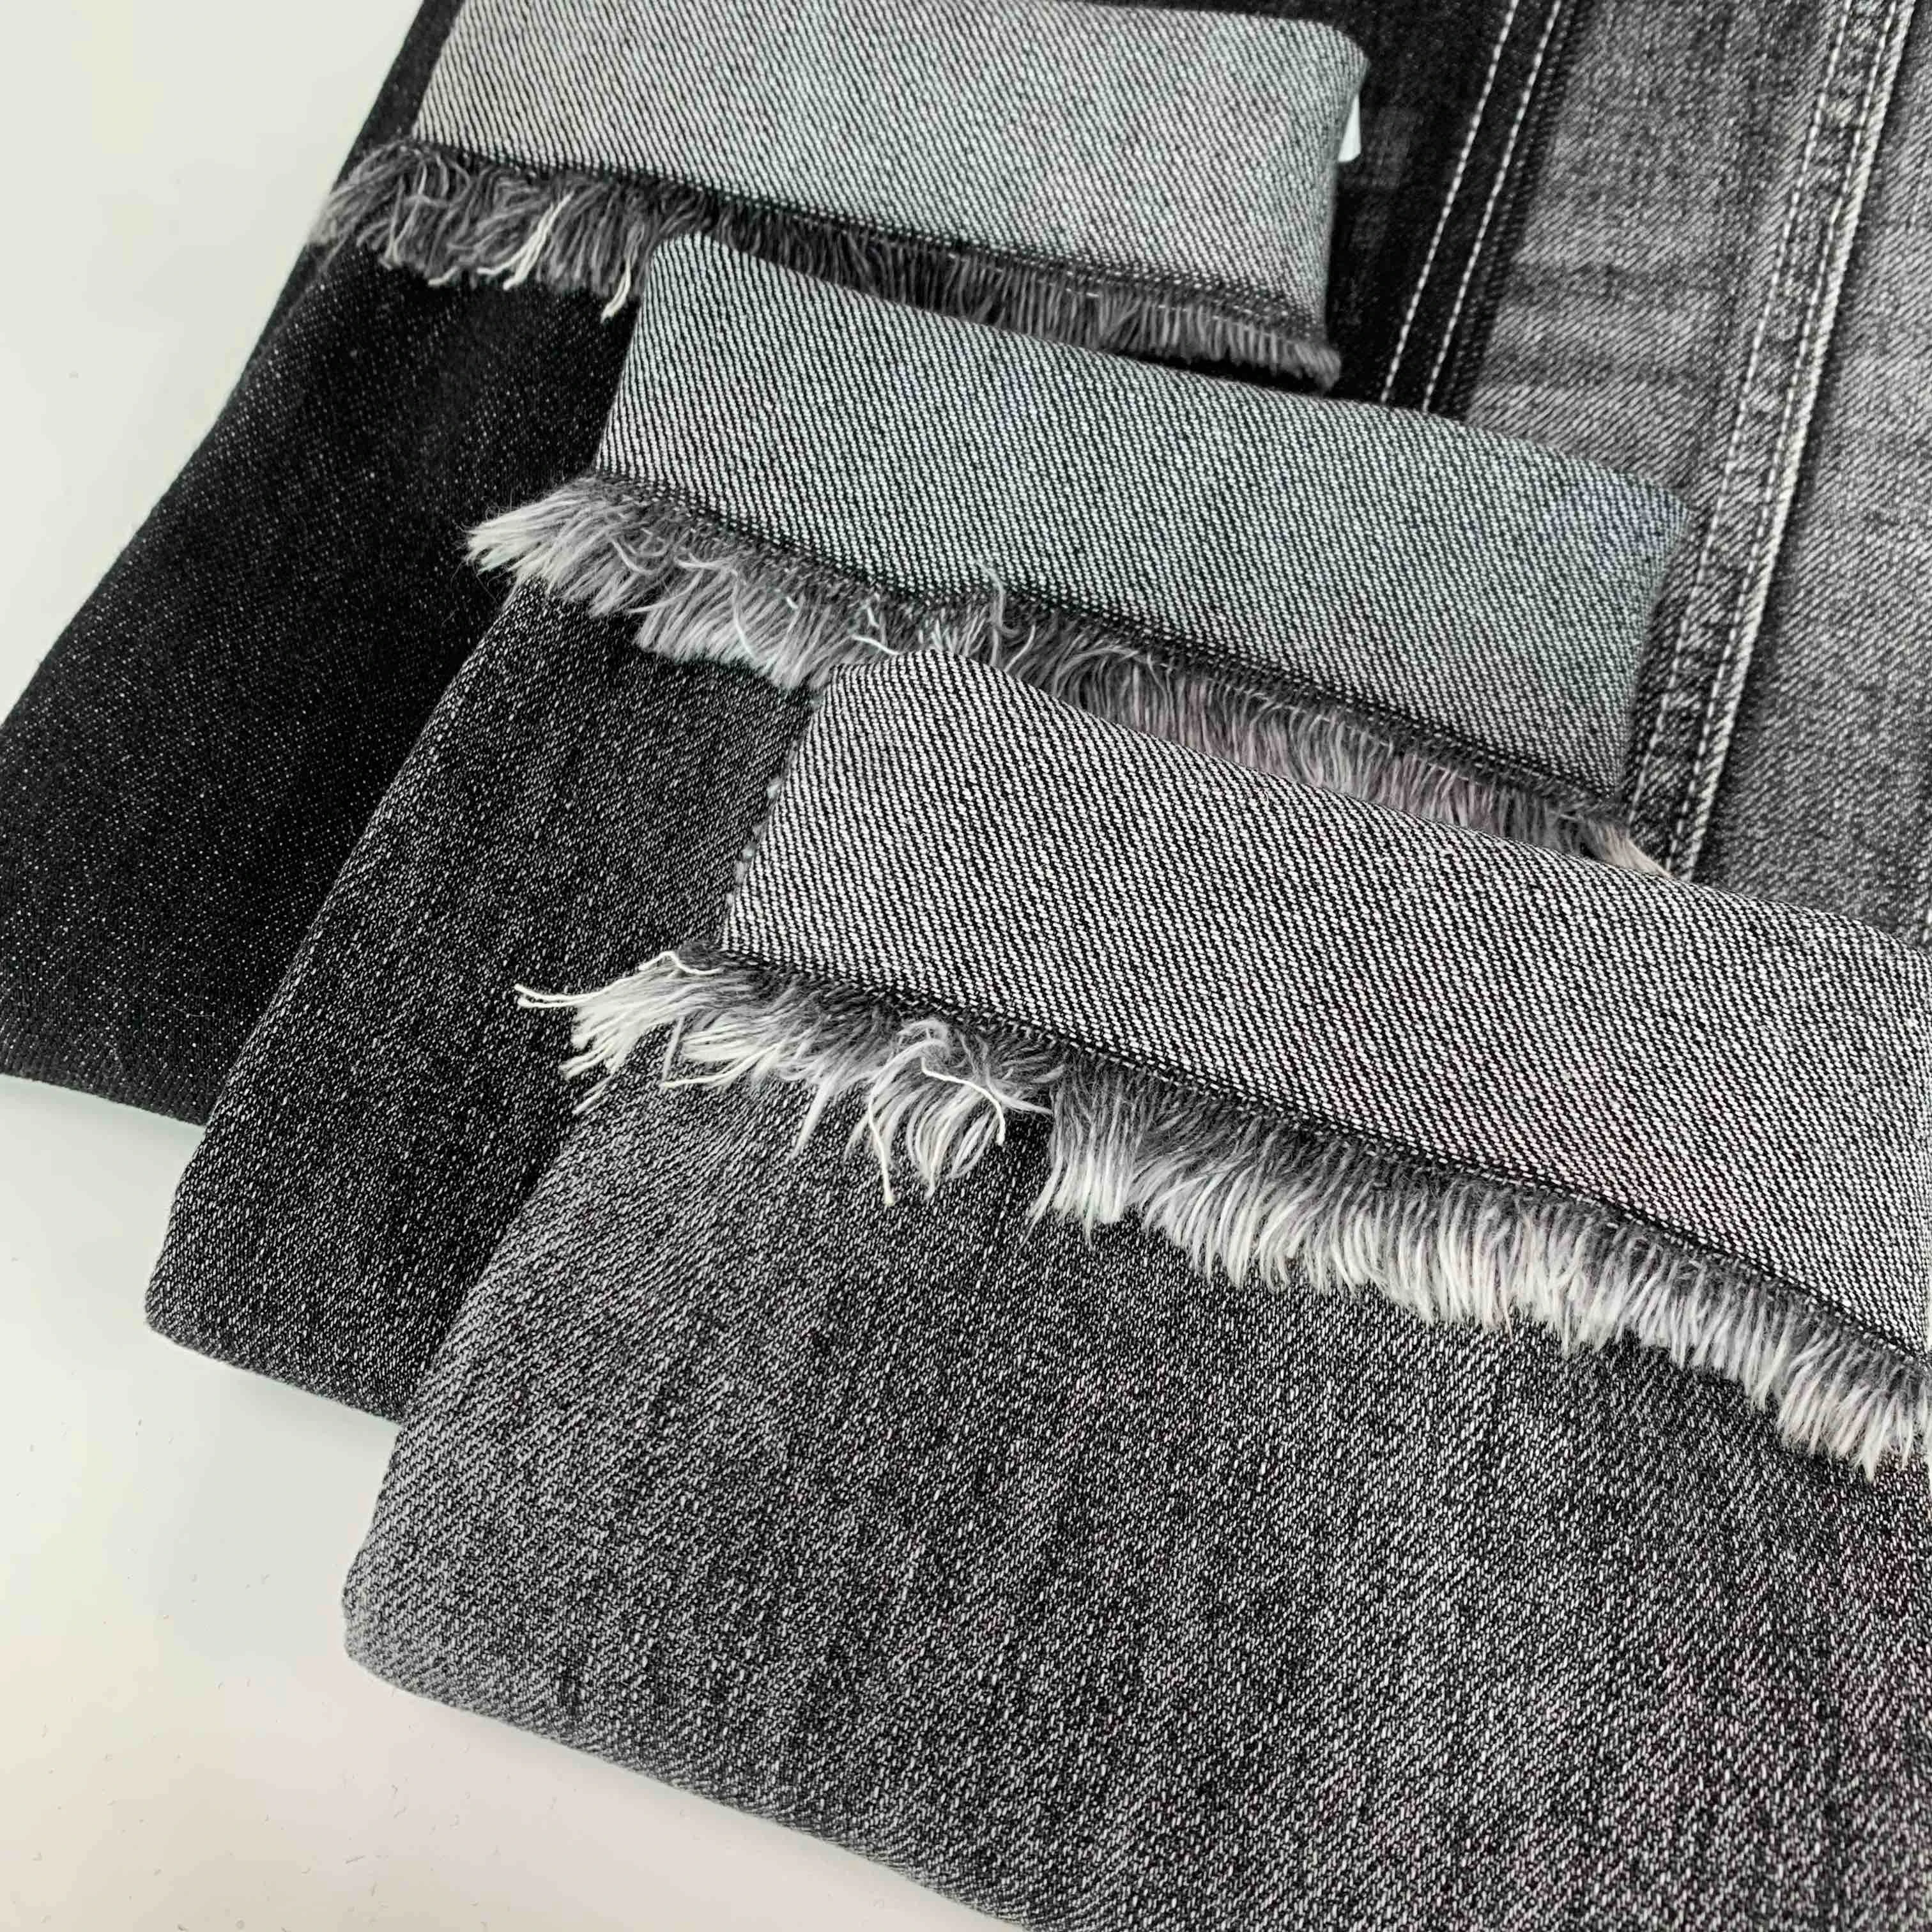 Non-Stretch Black Denim Fabric 100% Cotton